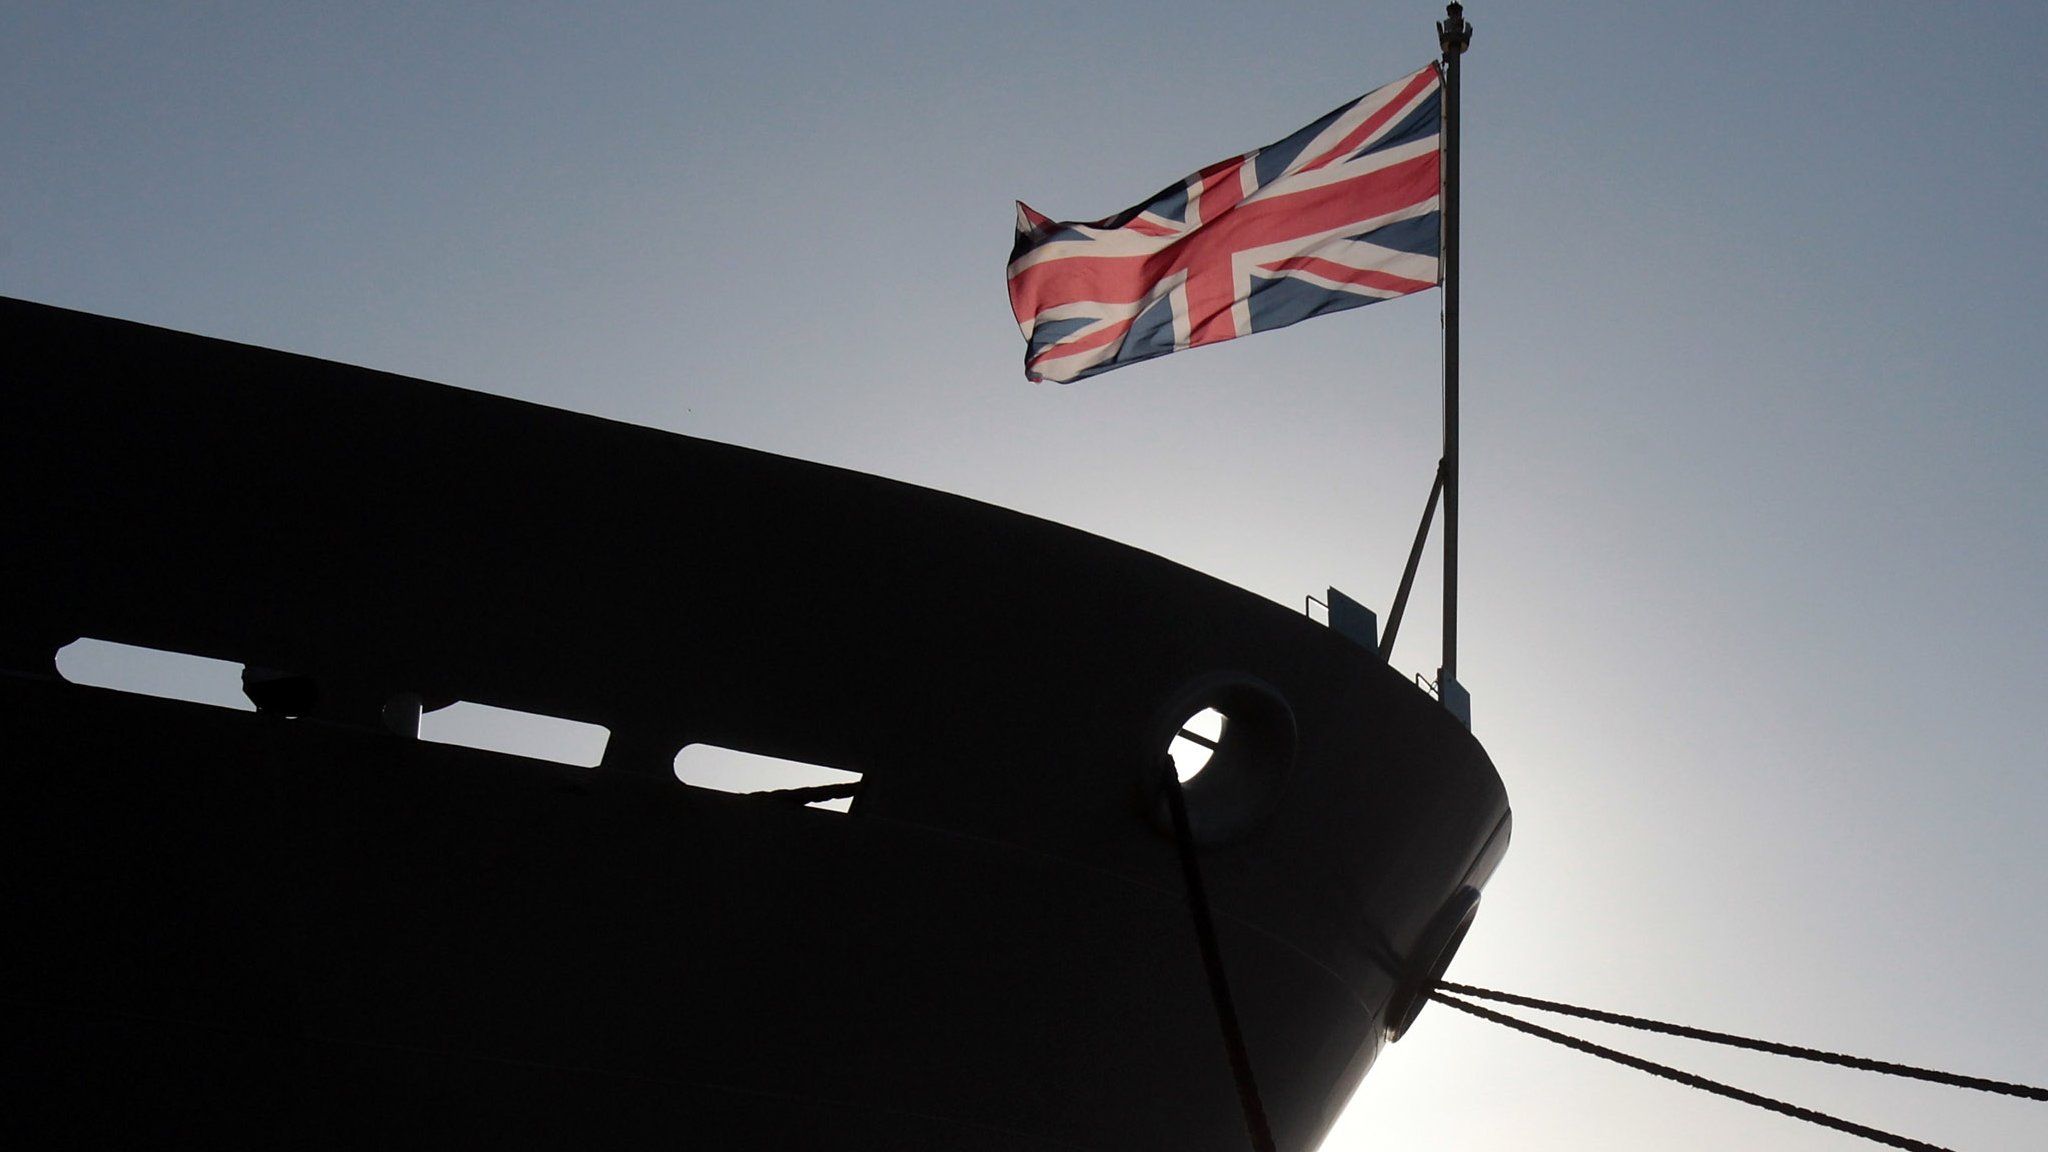 The union jack flag flies on HMS Bulwark